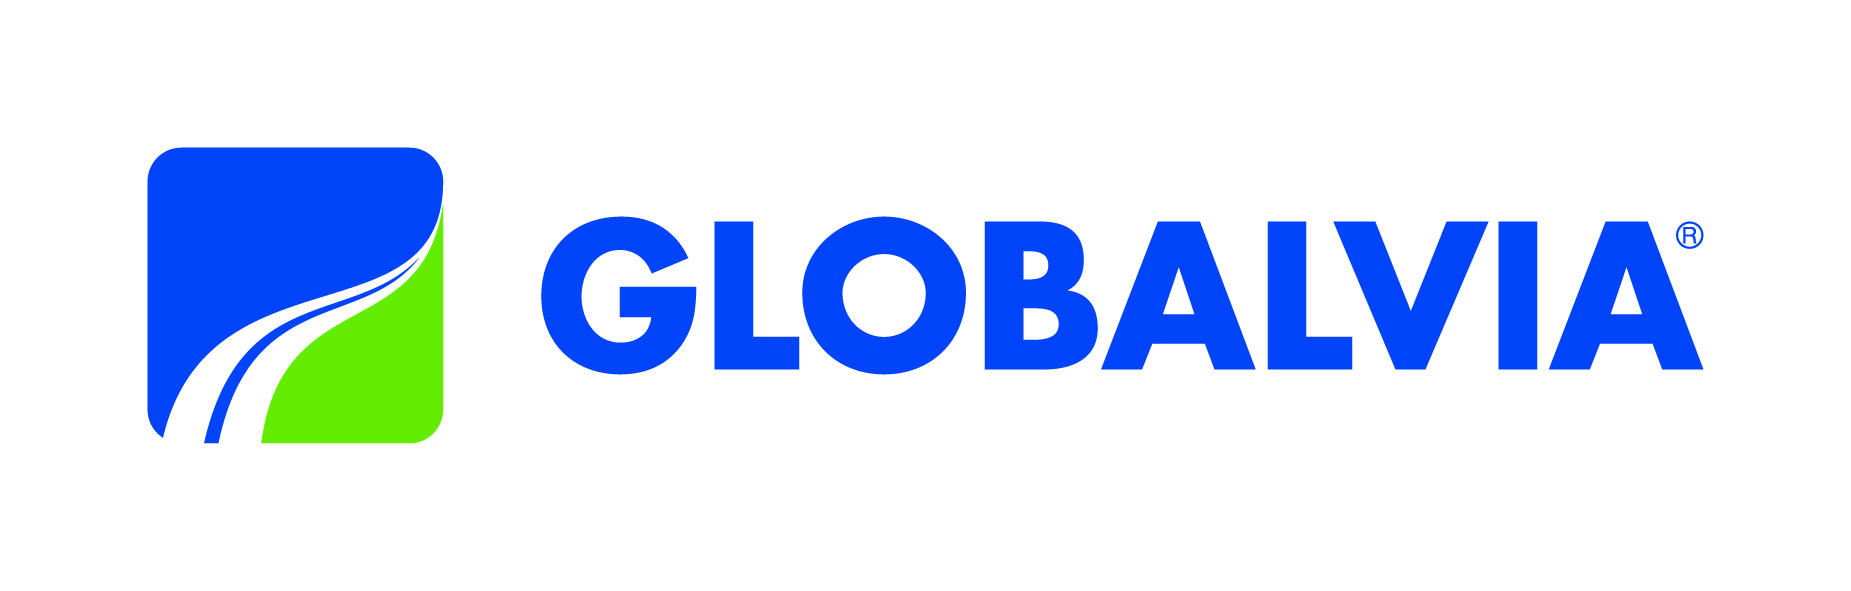 logo globalvia